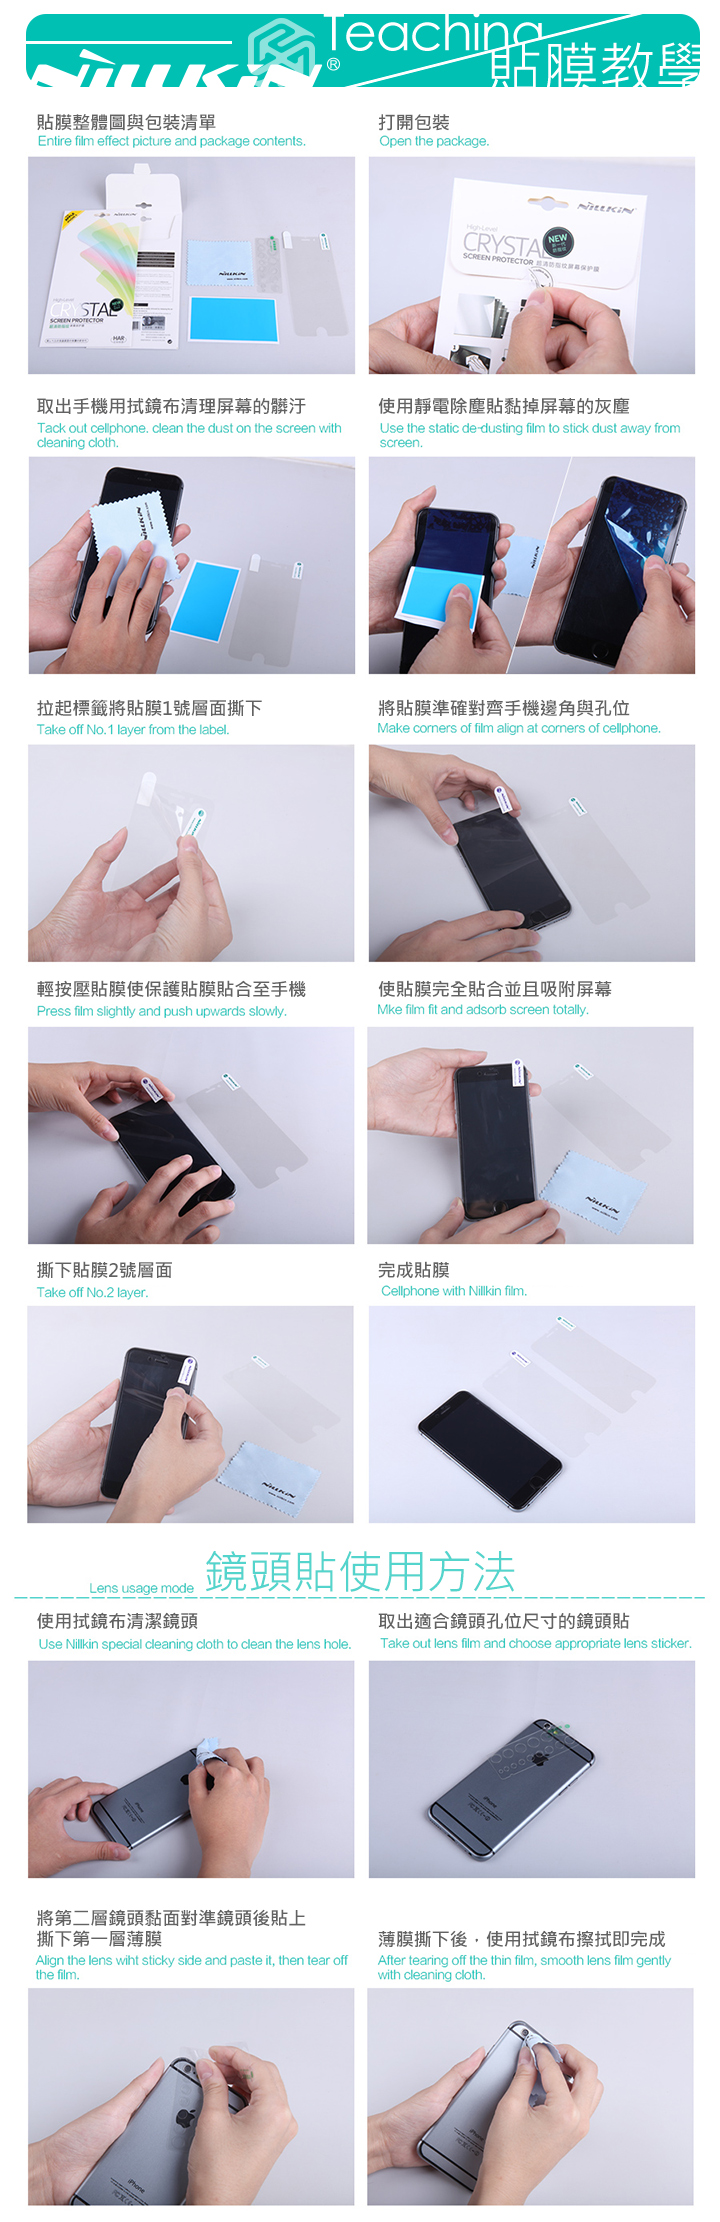 NILLKIN MIUI 紅米 Note 6 Pro 超清防指紋保護貼 - 套裝版